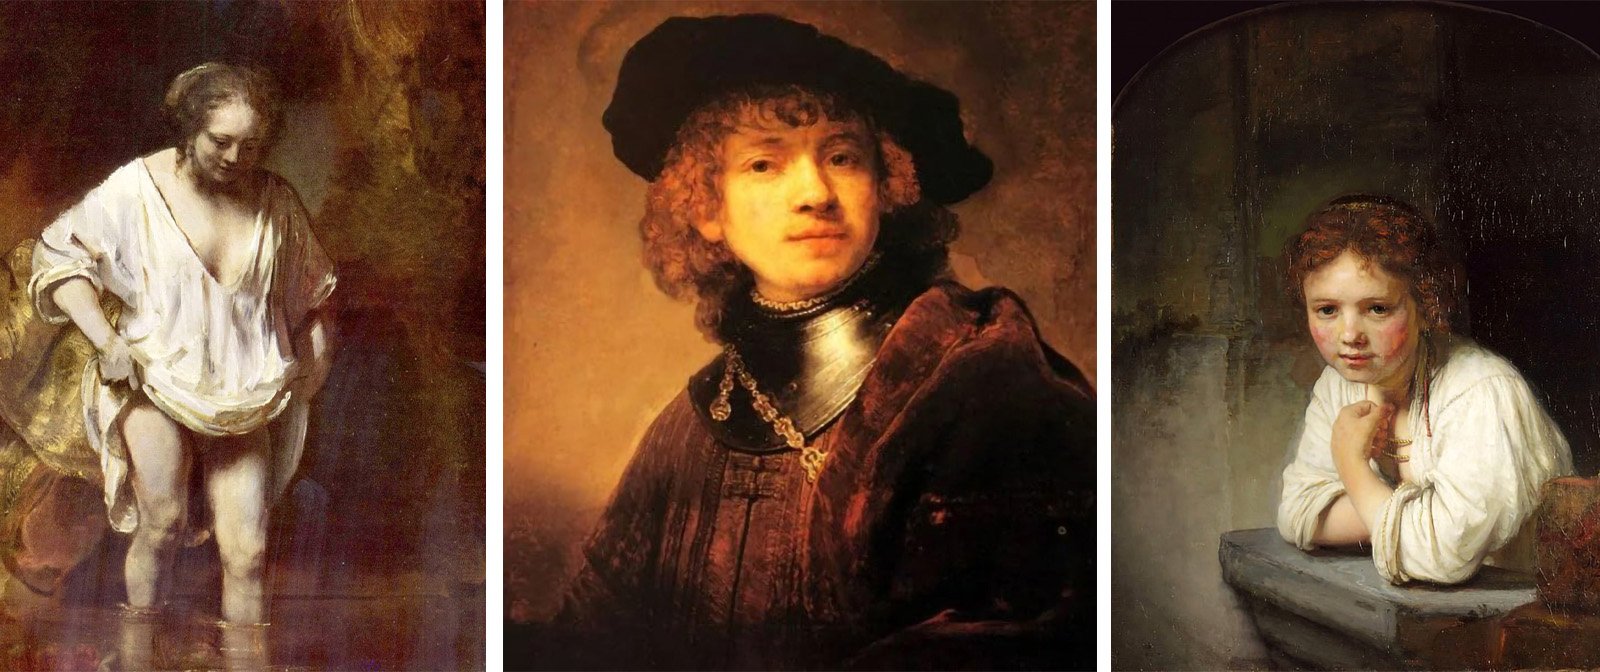 Был объявлен банкротом и потерял всех близких. Трагическая судьба Рембрандта.